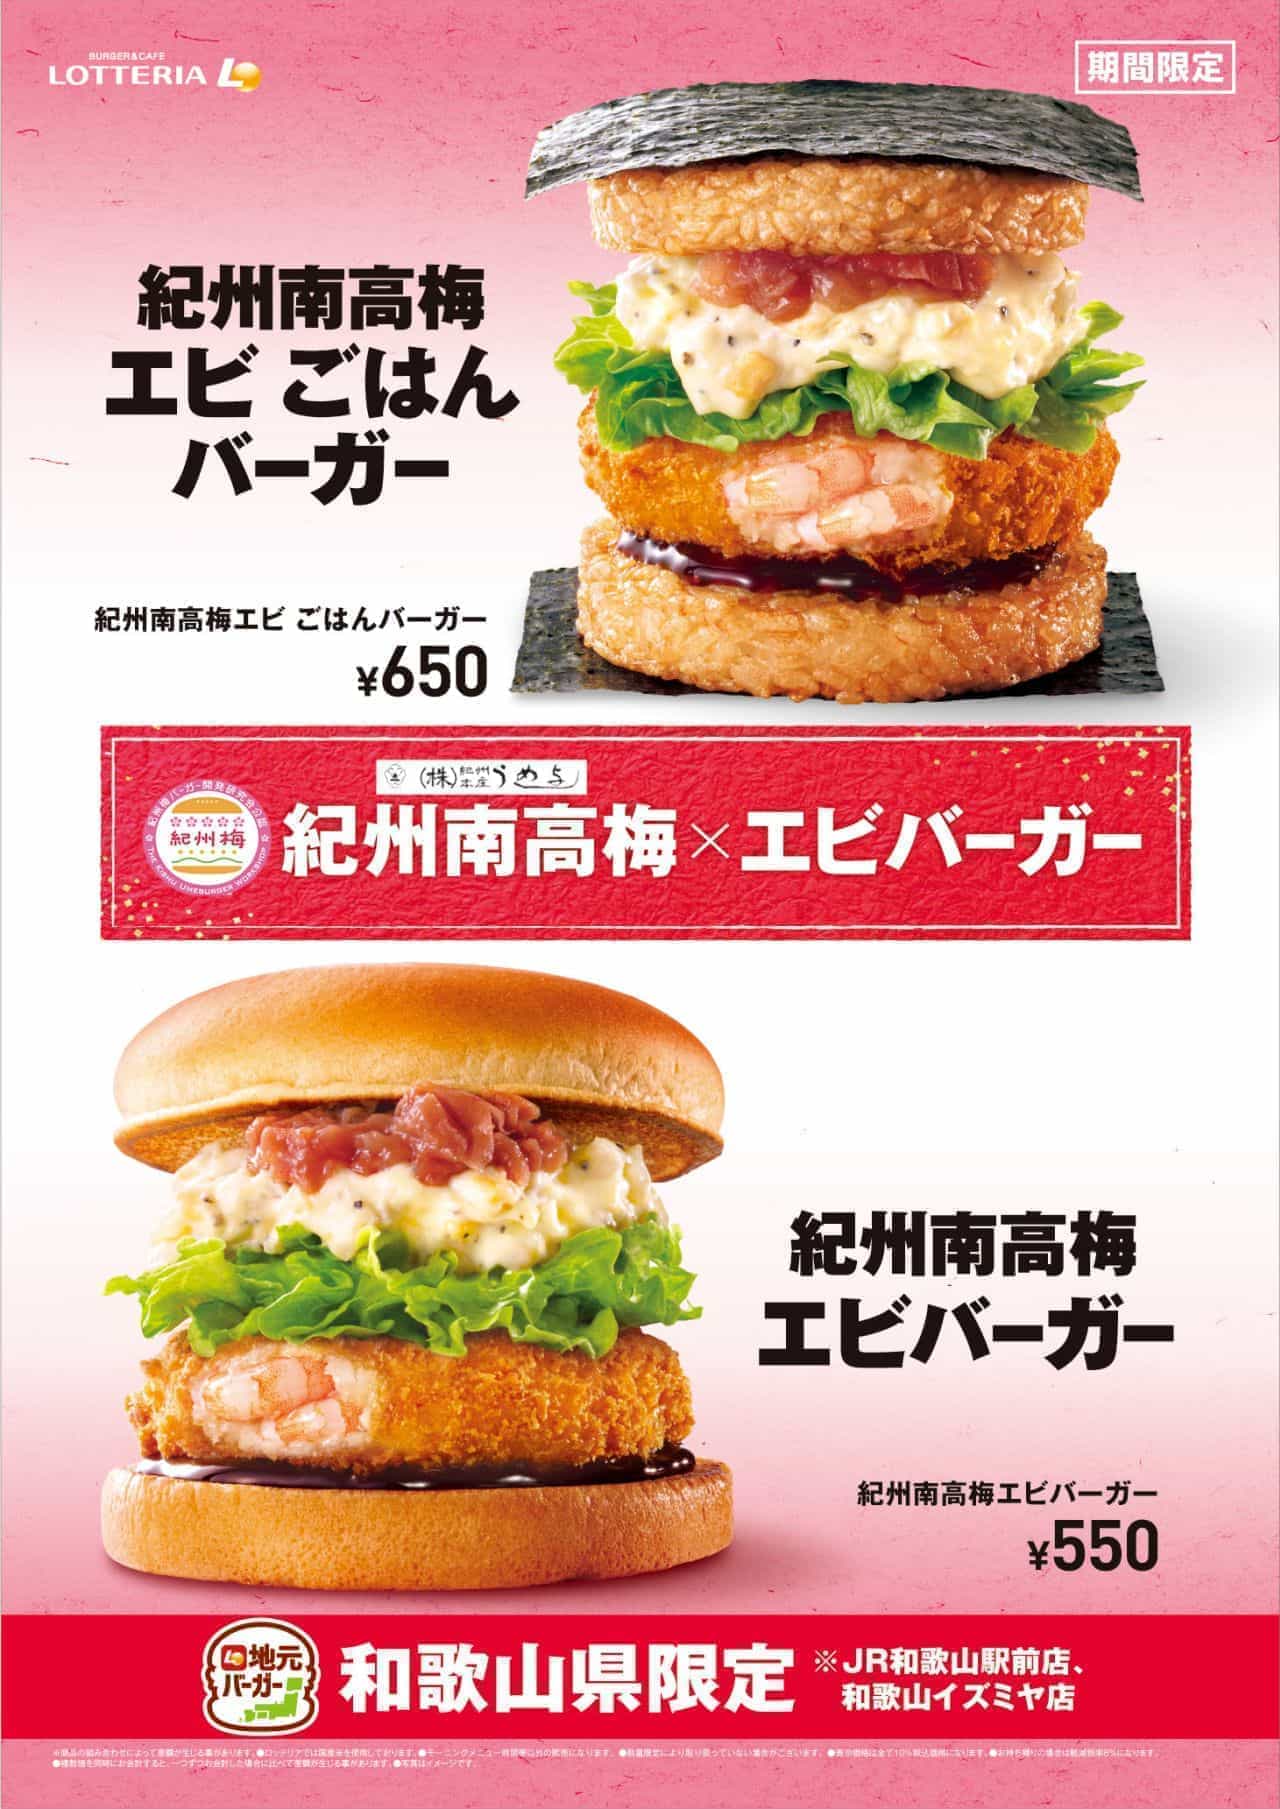 Lotteria "Kishu Nanko Ume Plum Shrimp Burger" and "Kishu Nanko Plum Shrimp Gohan Burger